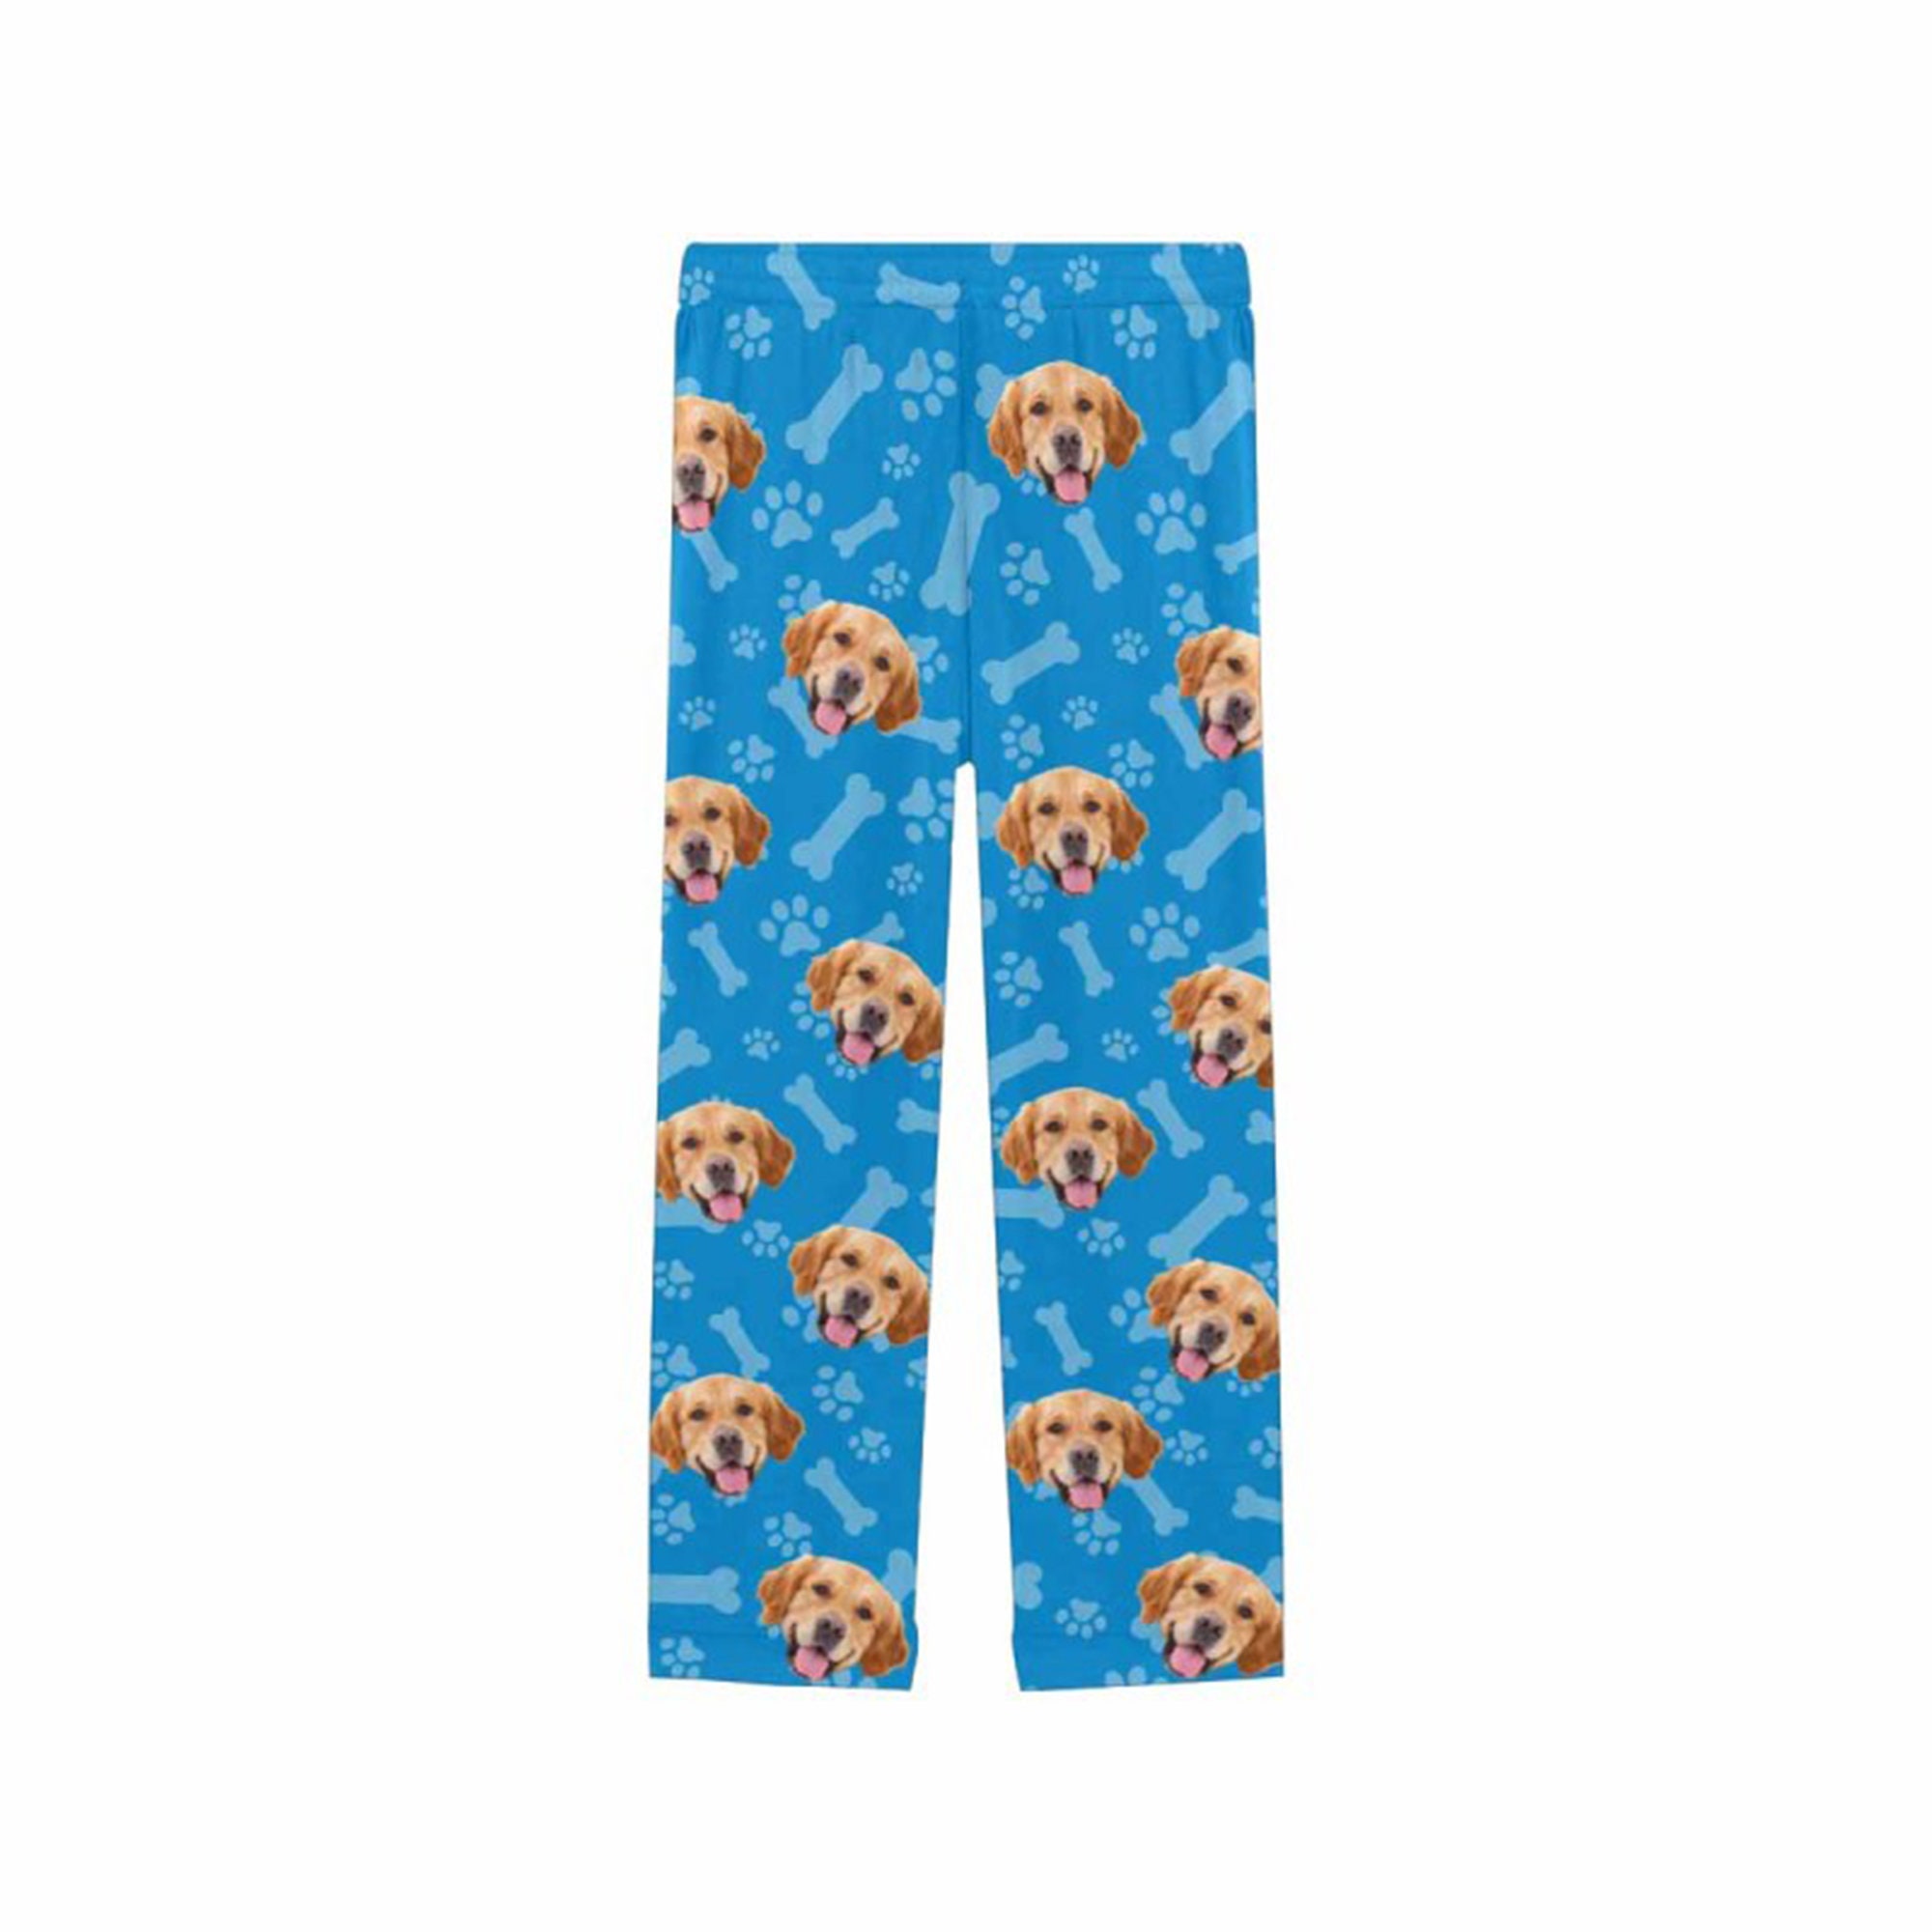 Custom Dog Photo Pajamaspersonalized Pajamas Pants With | Etsy